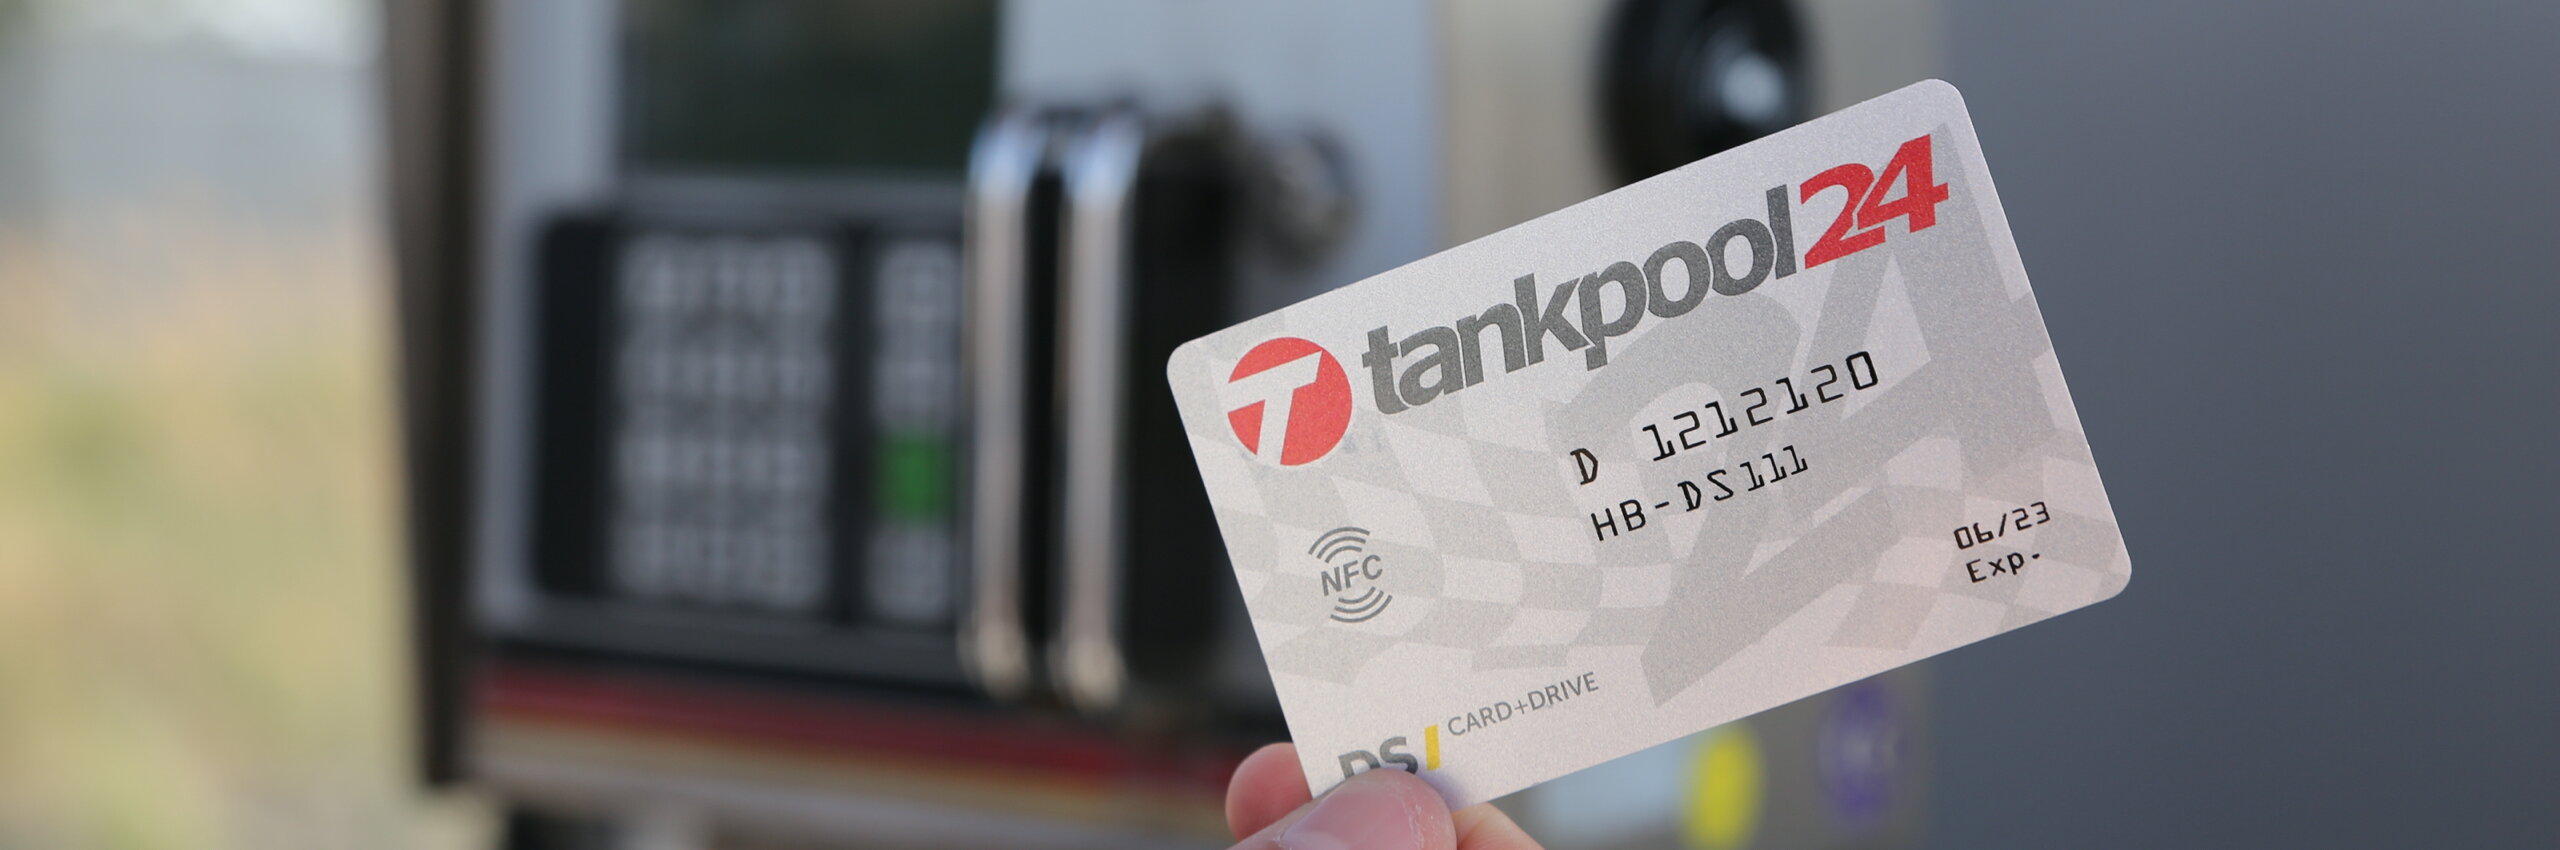 Mit der kostenlosen Tankkarte von tankpool24 haben Sie ihr Flottenmanagement bestens im Griff. An unseren Tankstation können Sie rund um die Uhr günstig Diesel beziehen.